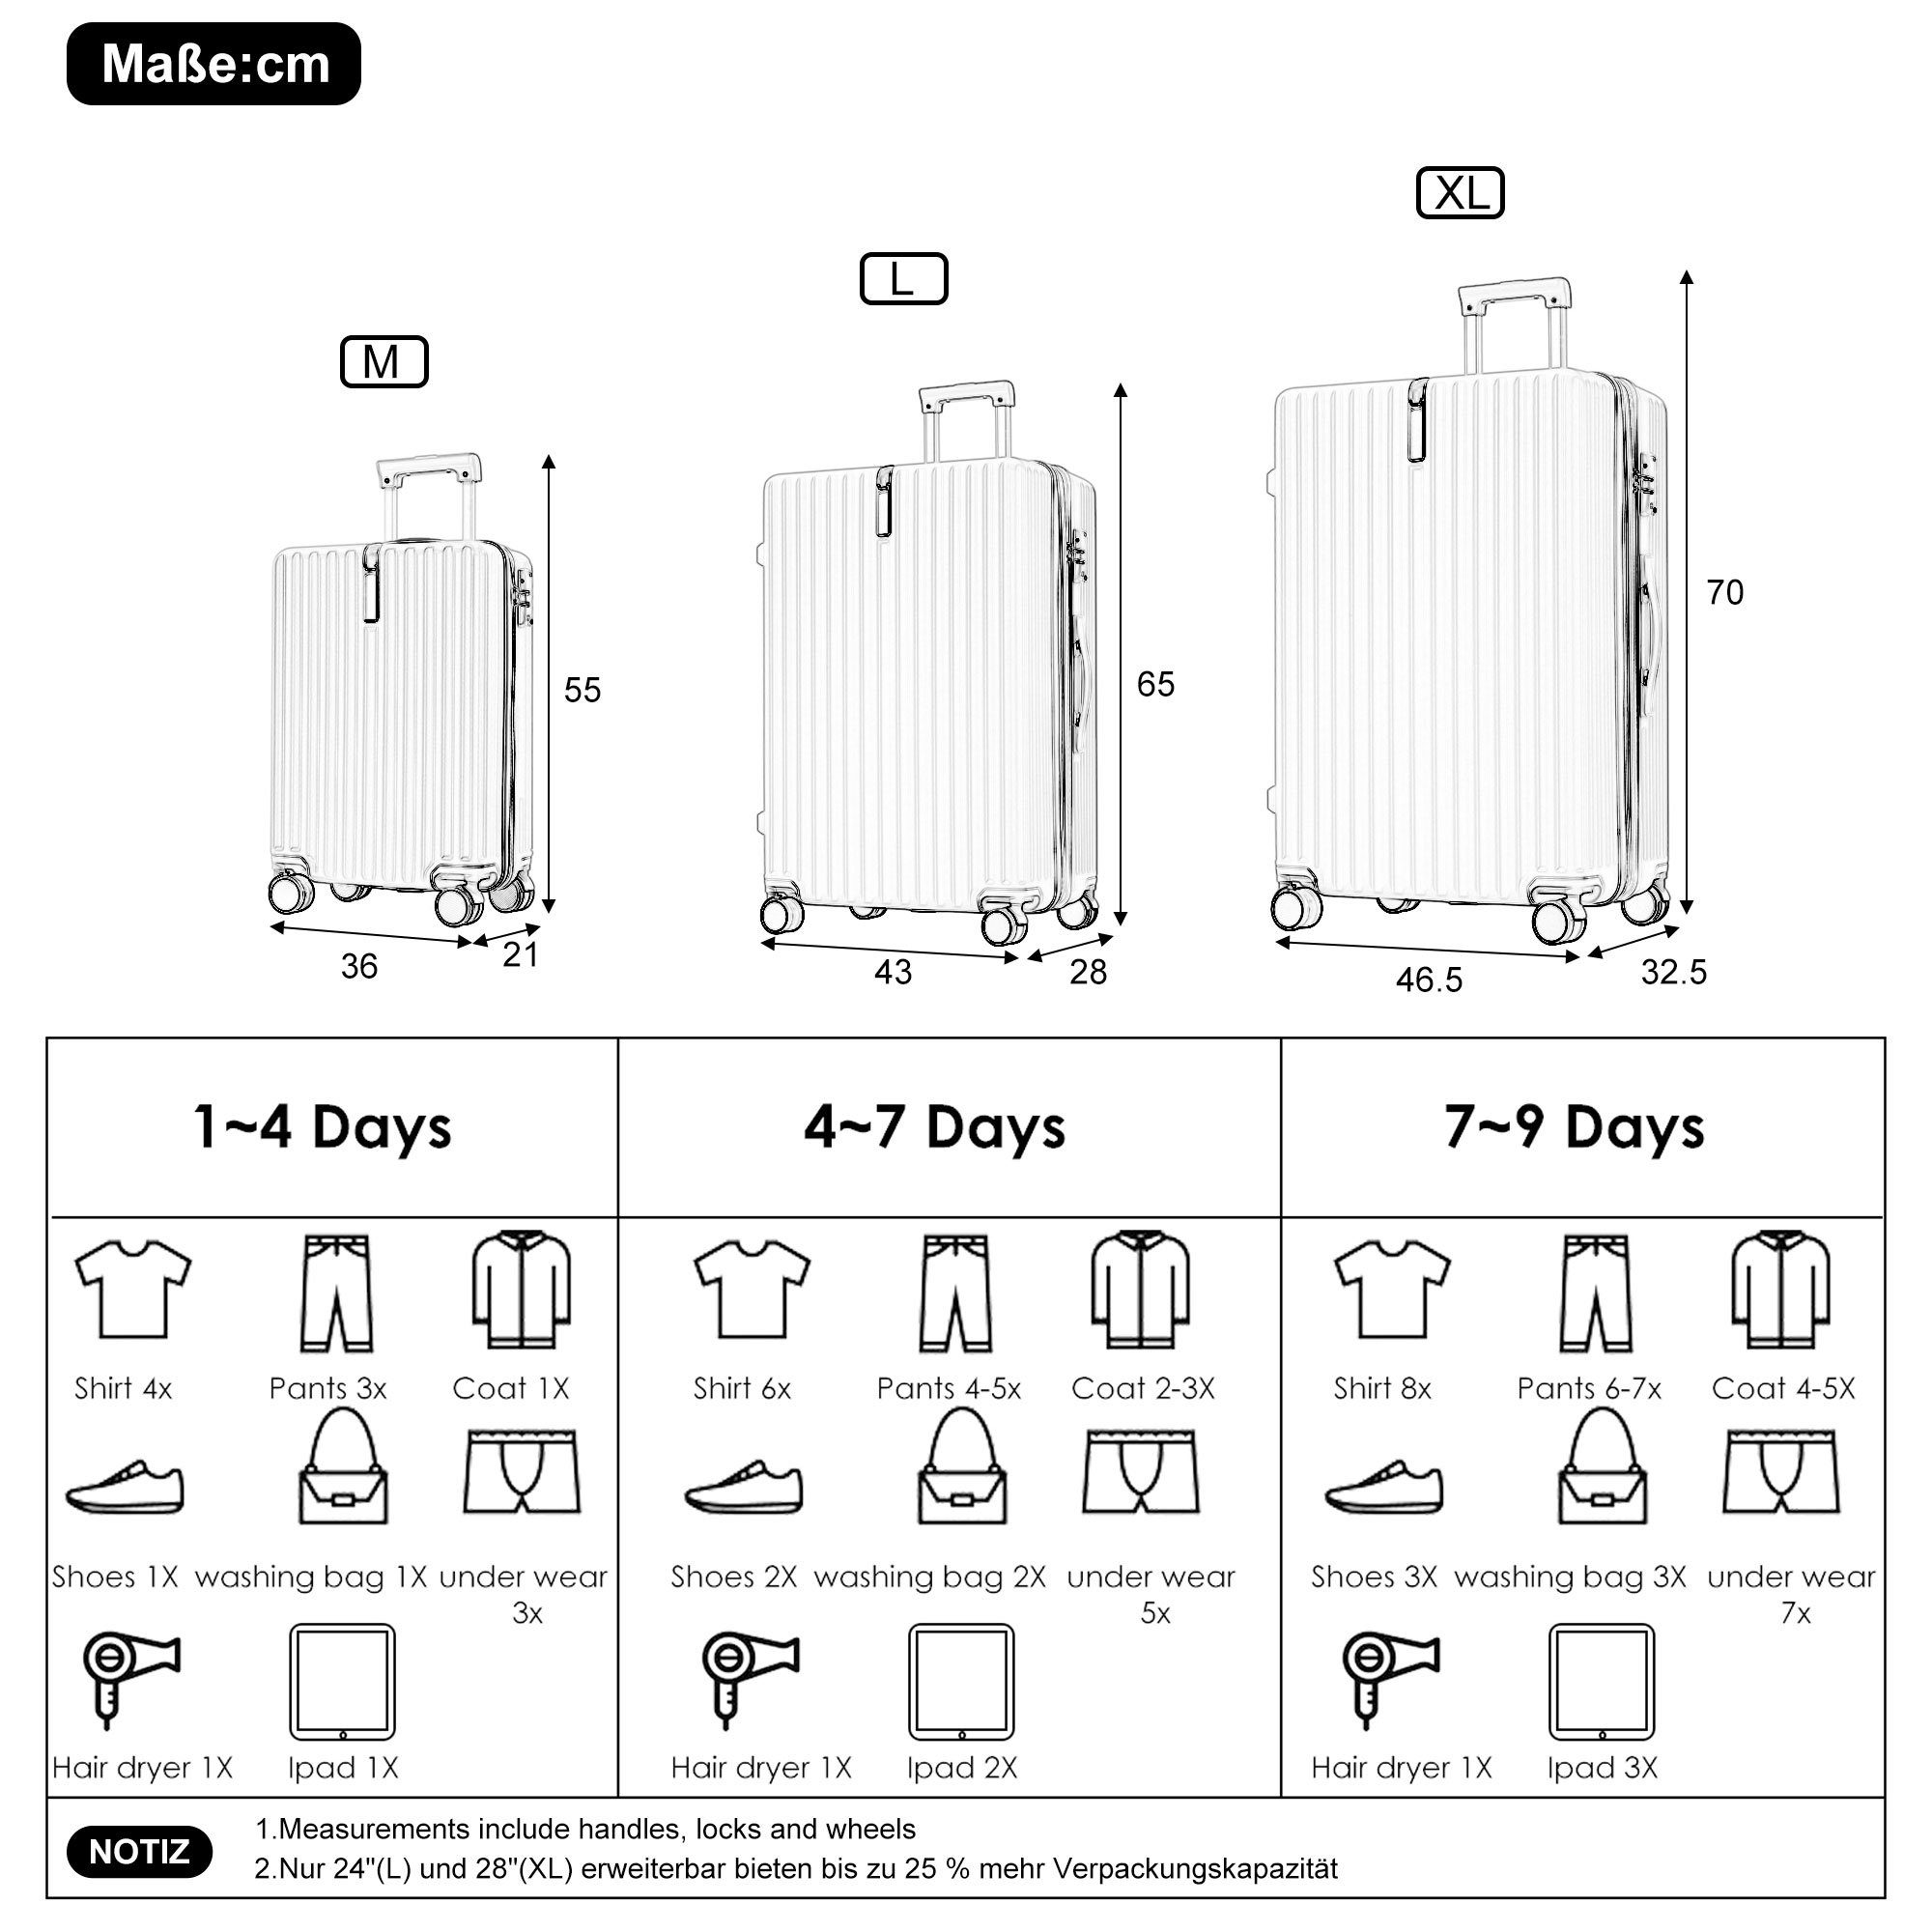 Grau Rollen, Trolleyset Kofferset tlg) ABS-Material, Ulife TSA Reisekoffer Handgepäck 4 Zollschloss, (3